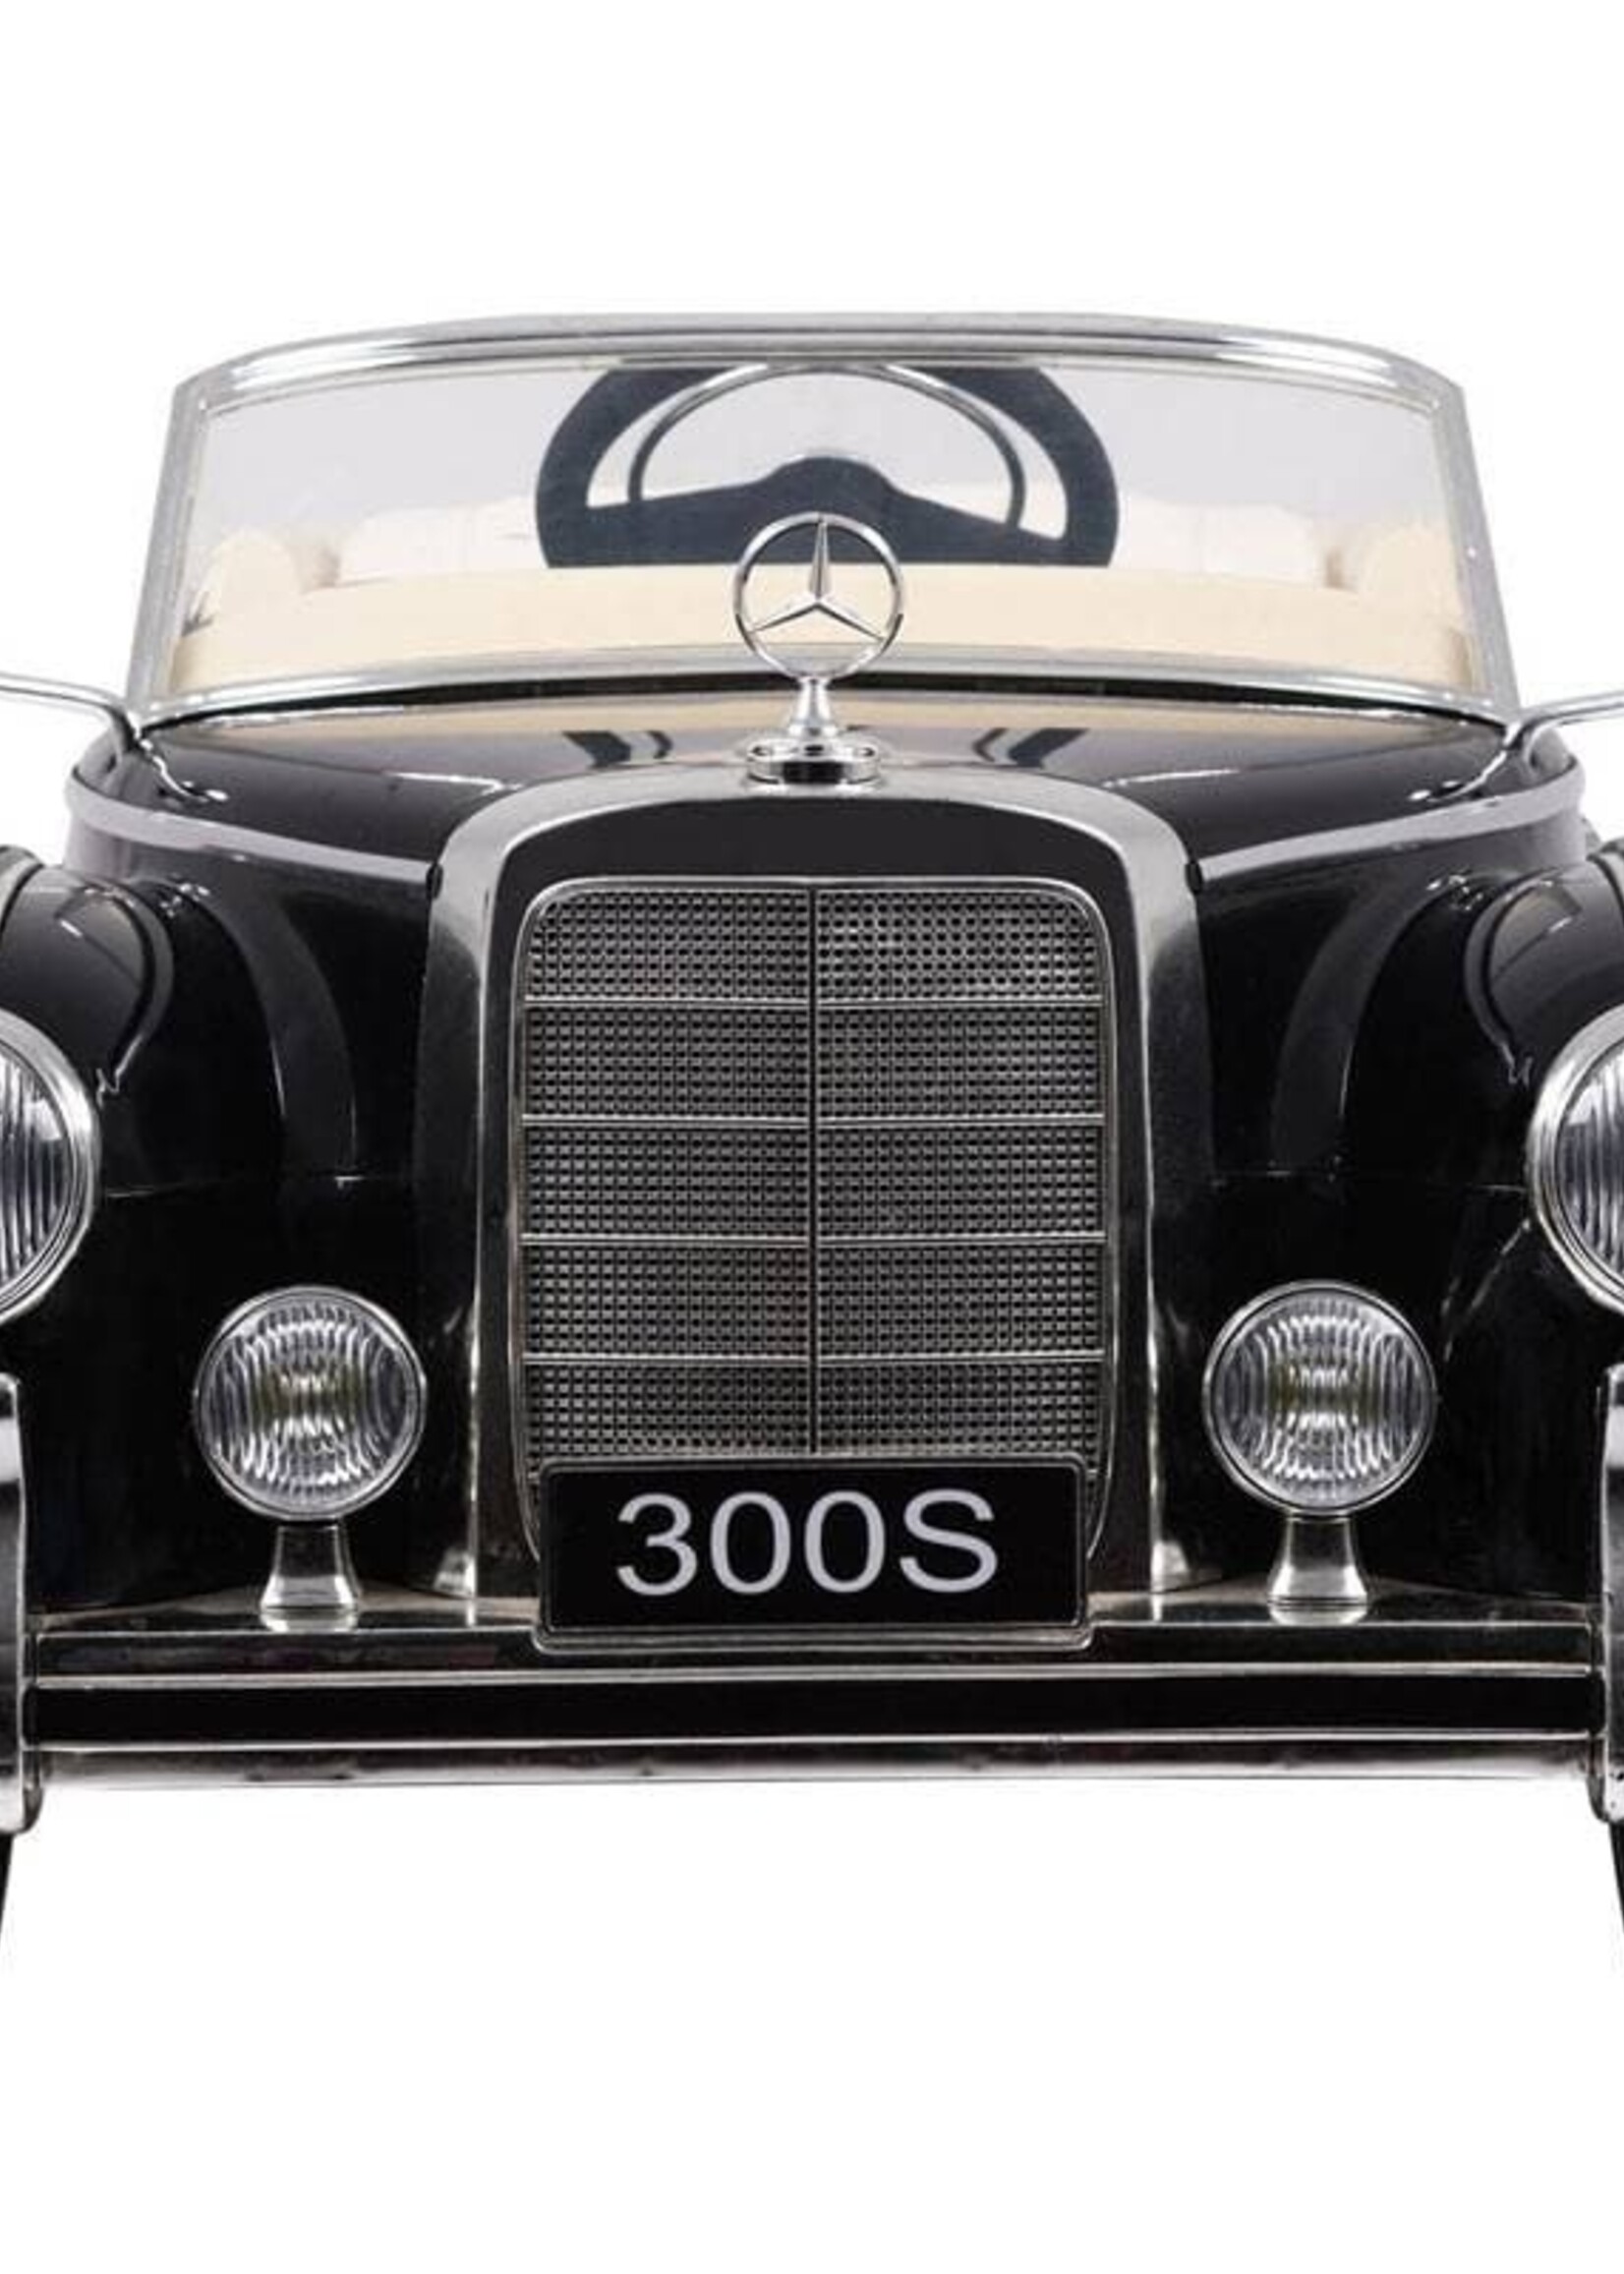 Mercedes 300s zwarte kinderauto